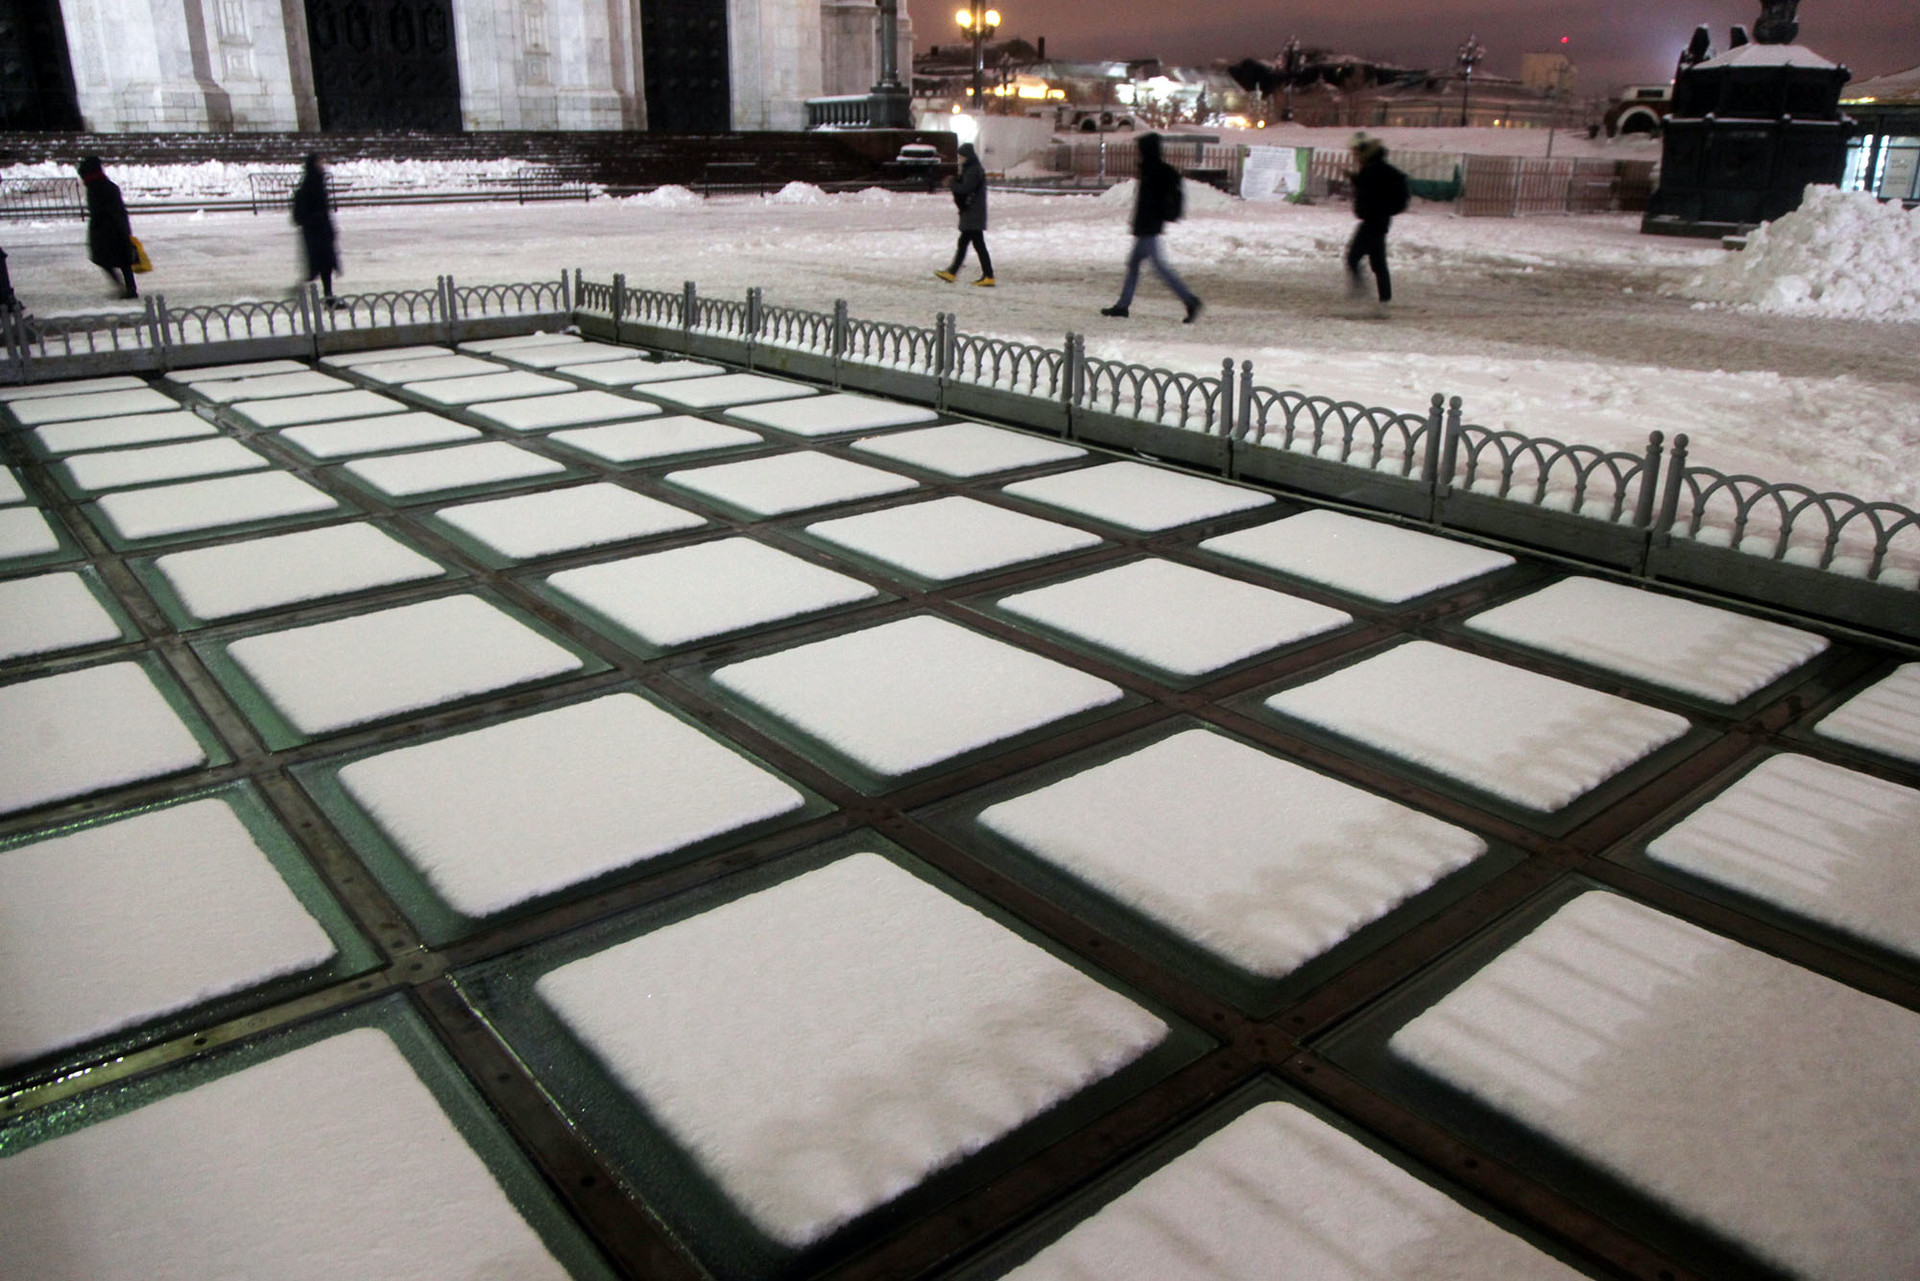 Salju yang jatuh di atap kaca membentuk pola kotak di halaman Katedral Kristus Sang Juru Selamat, Moskow, Rabu (13/2)